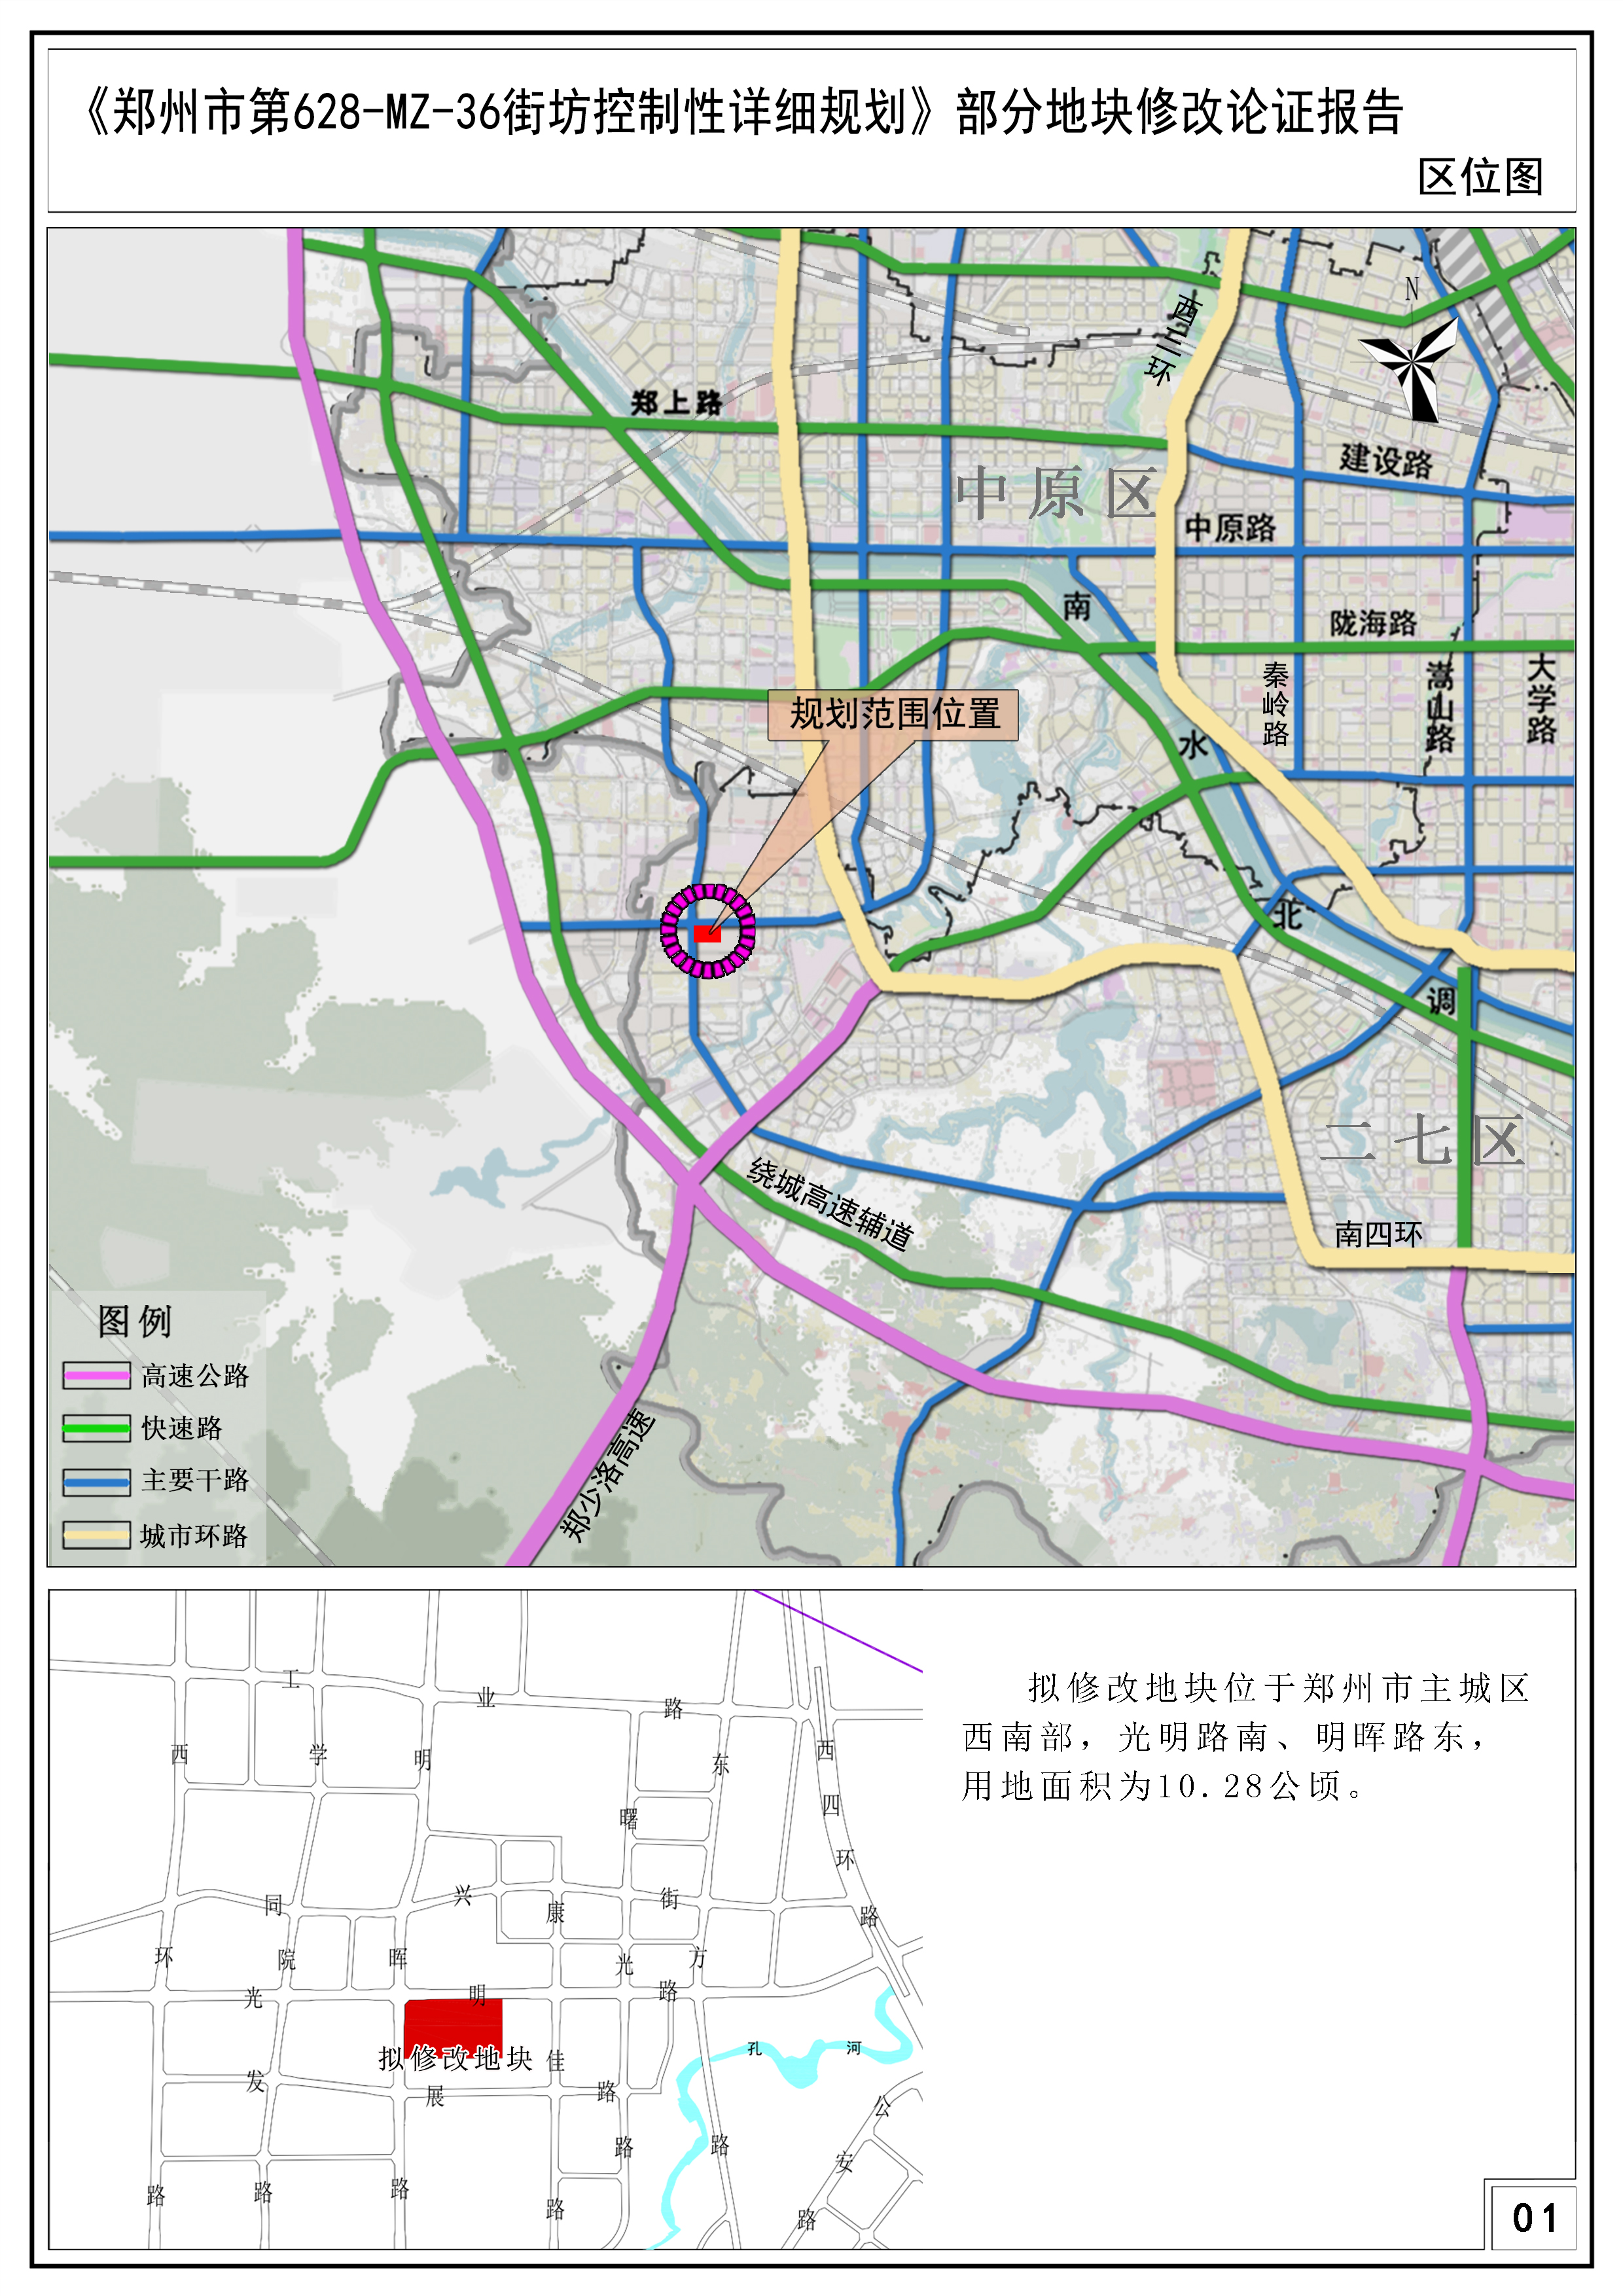 《郑州市第628-MZ-36街坊控制性详细规划》部分地块修改论证报告